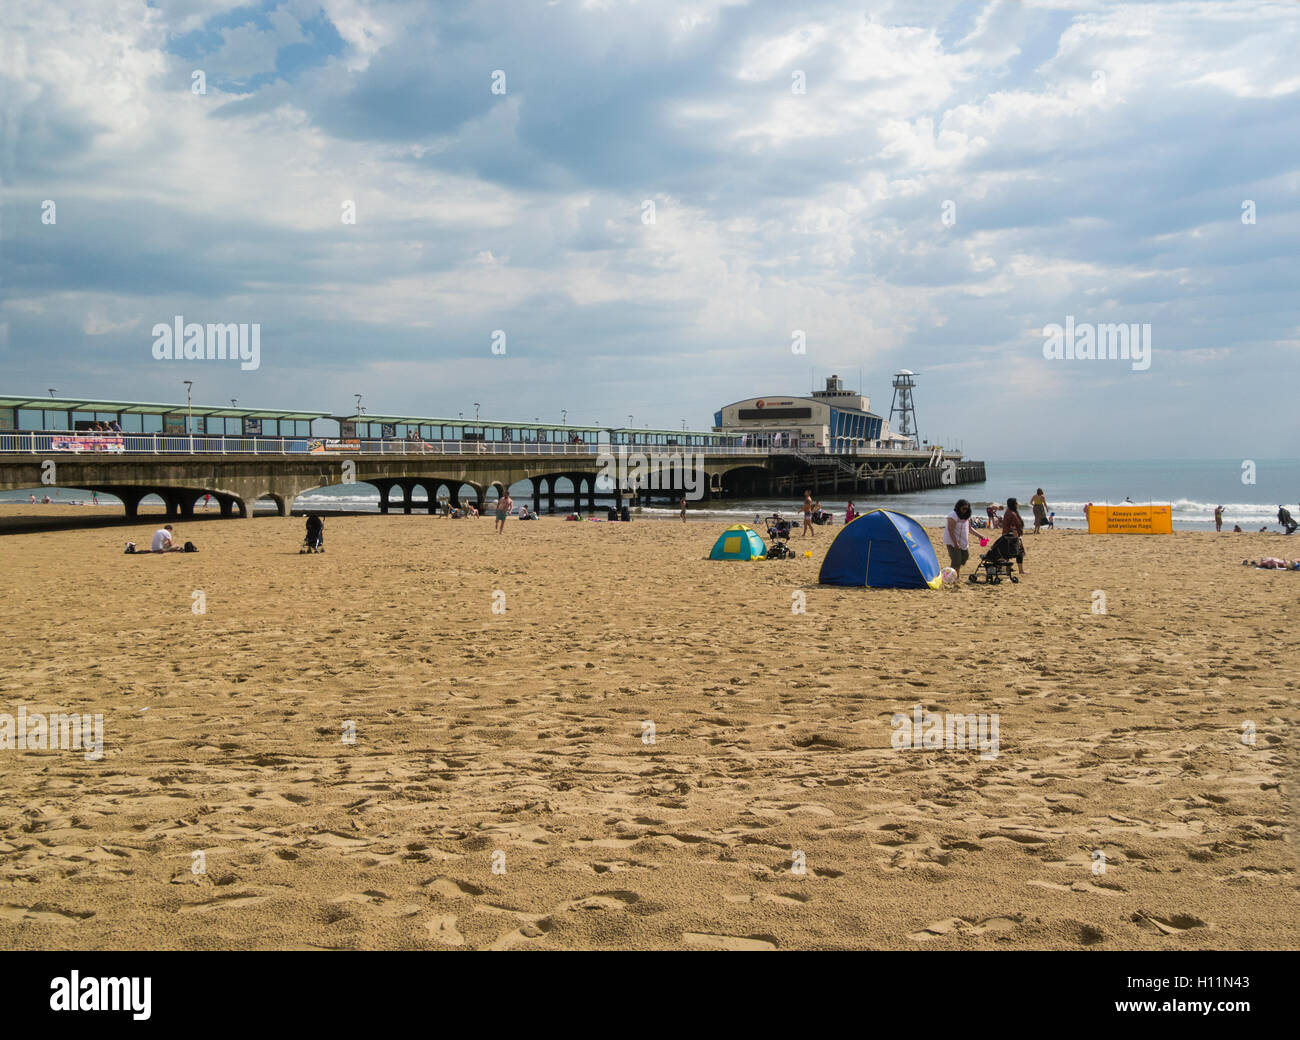 Touristen am schönen Sandstrand von Bournemouth Pier Dehnung ein sehr beliebter Badeort in Poole Bay Dorset England UK Stockfoto